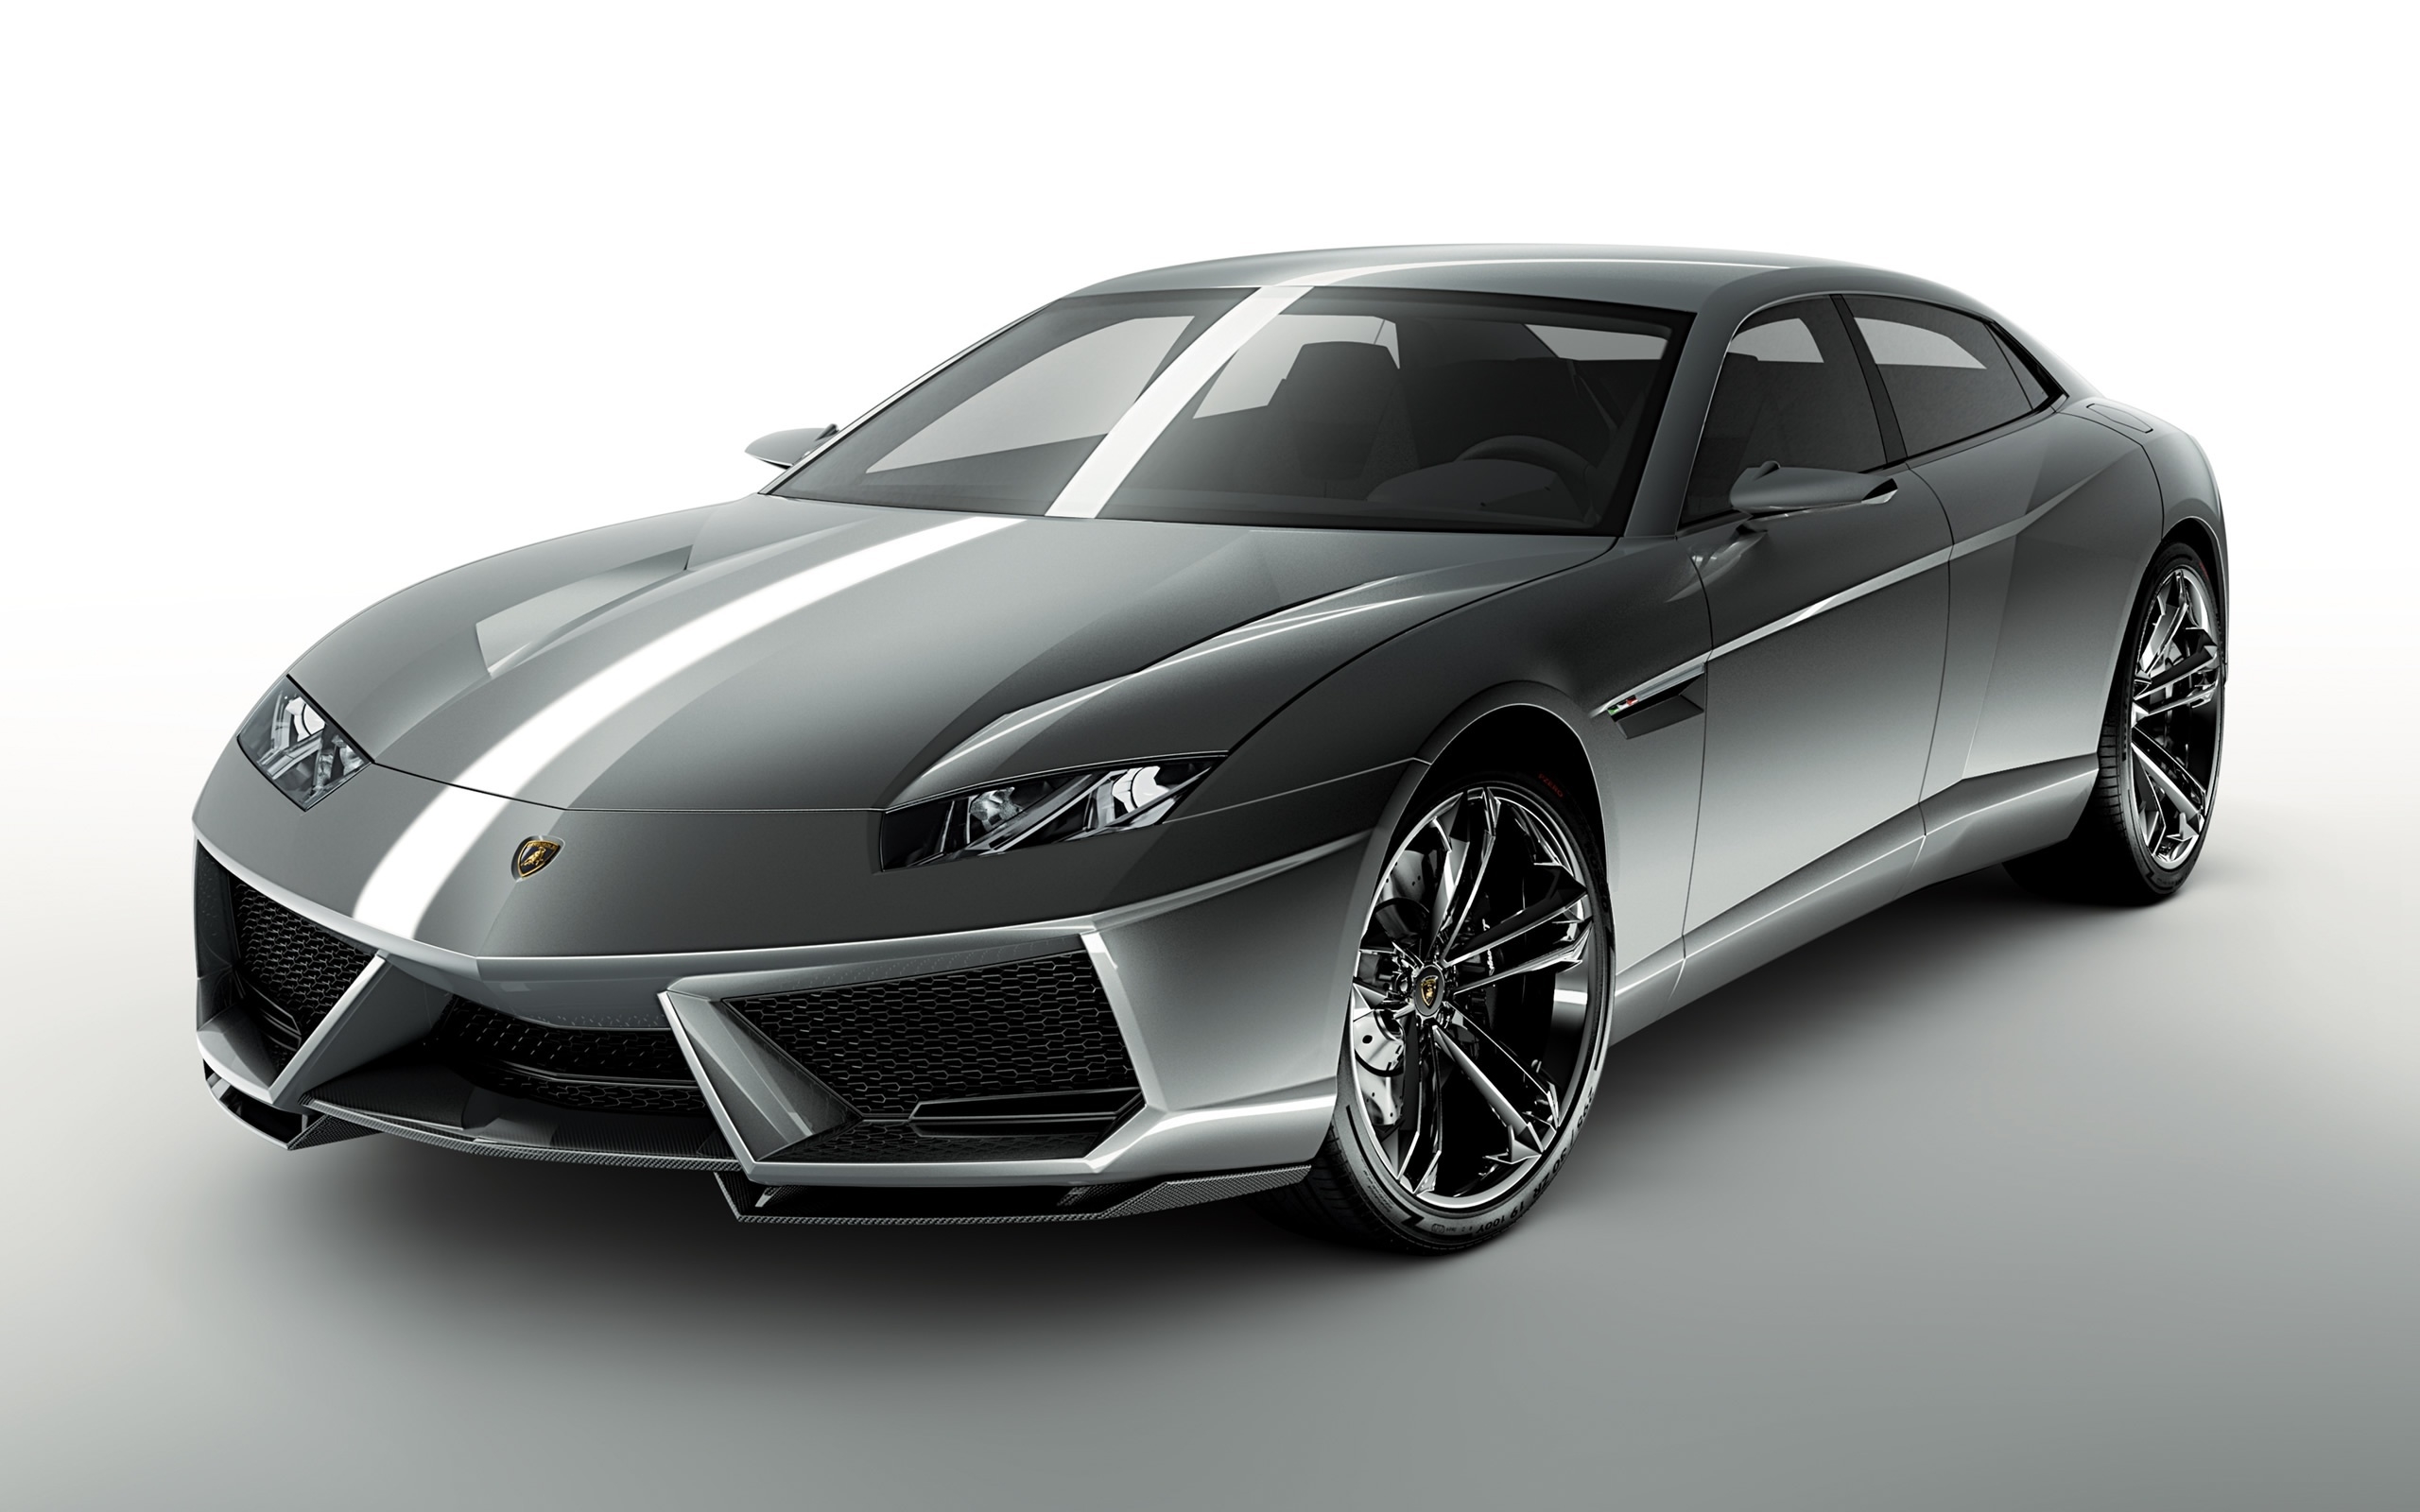 Lamborghini Estoque for 2560 x 1600 widescreen resolution